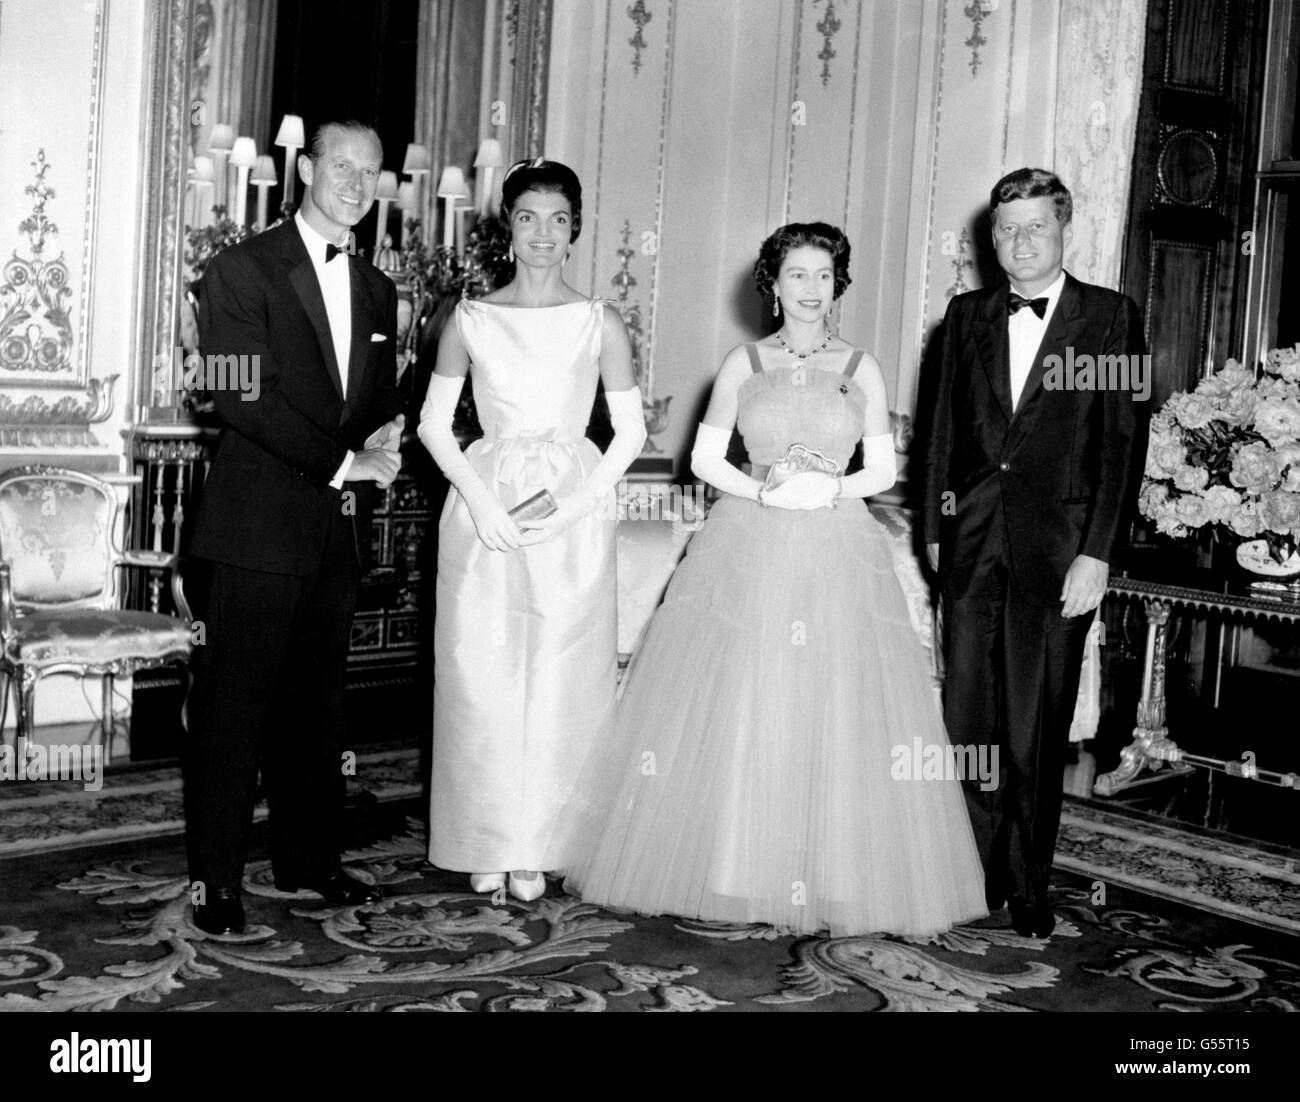 El presidente estadounidense John Kennedy (derecha) y su esposa Jacqueline (segunda izquierda) fotografiados con la reina Isabel II (segunda derecha) y el duque de Edimburgo en el Palacio de Buckingham, en Londres. Foto de stock